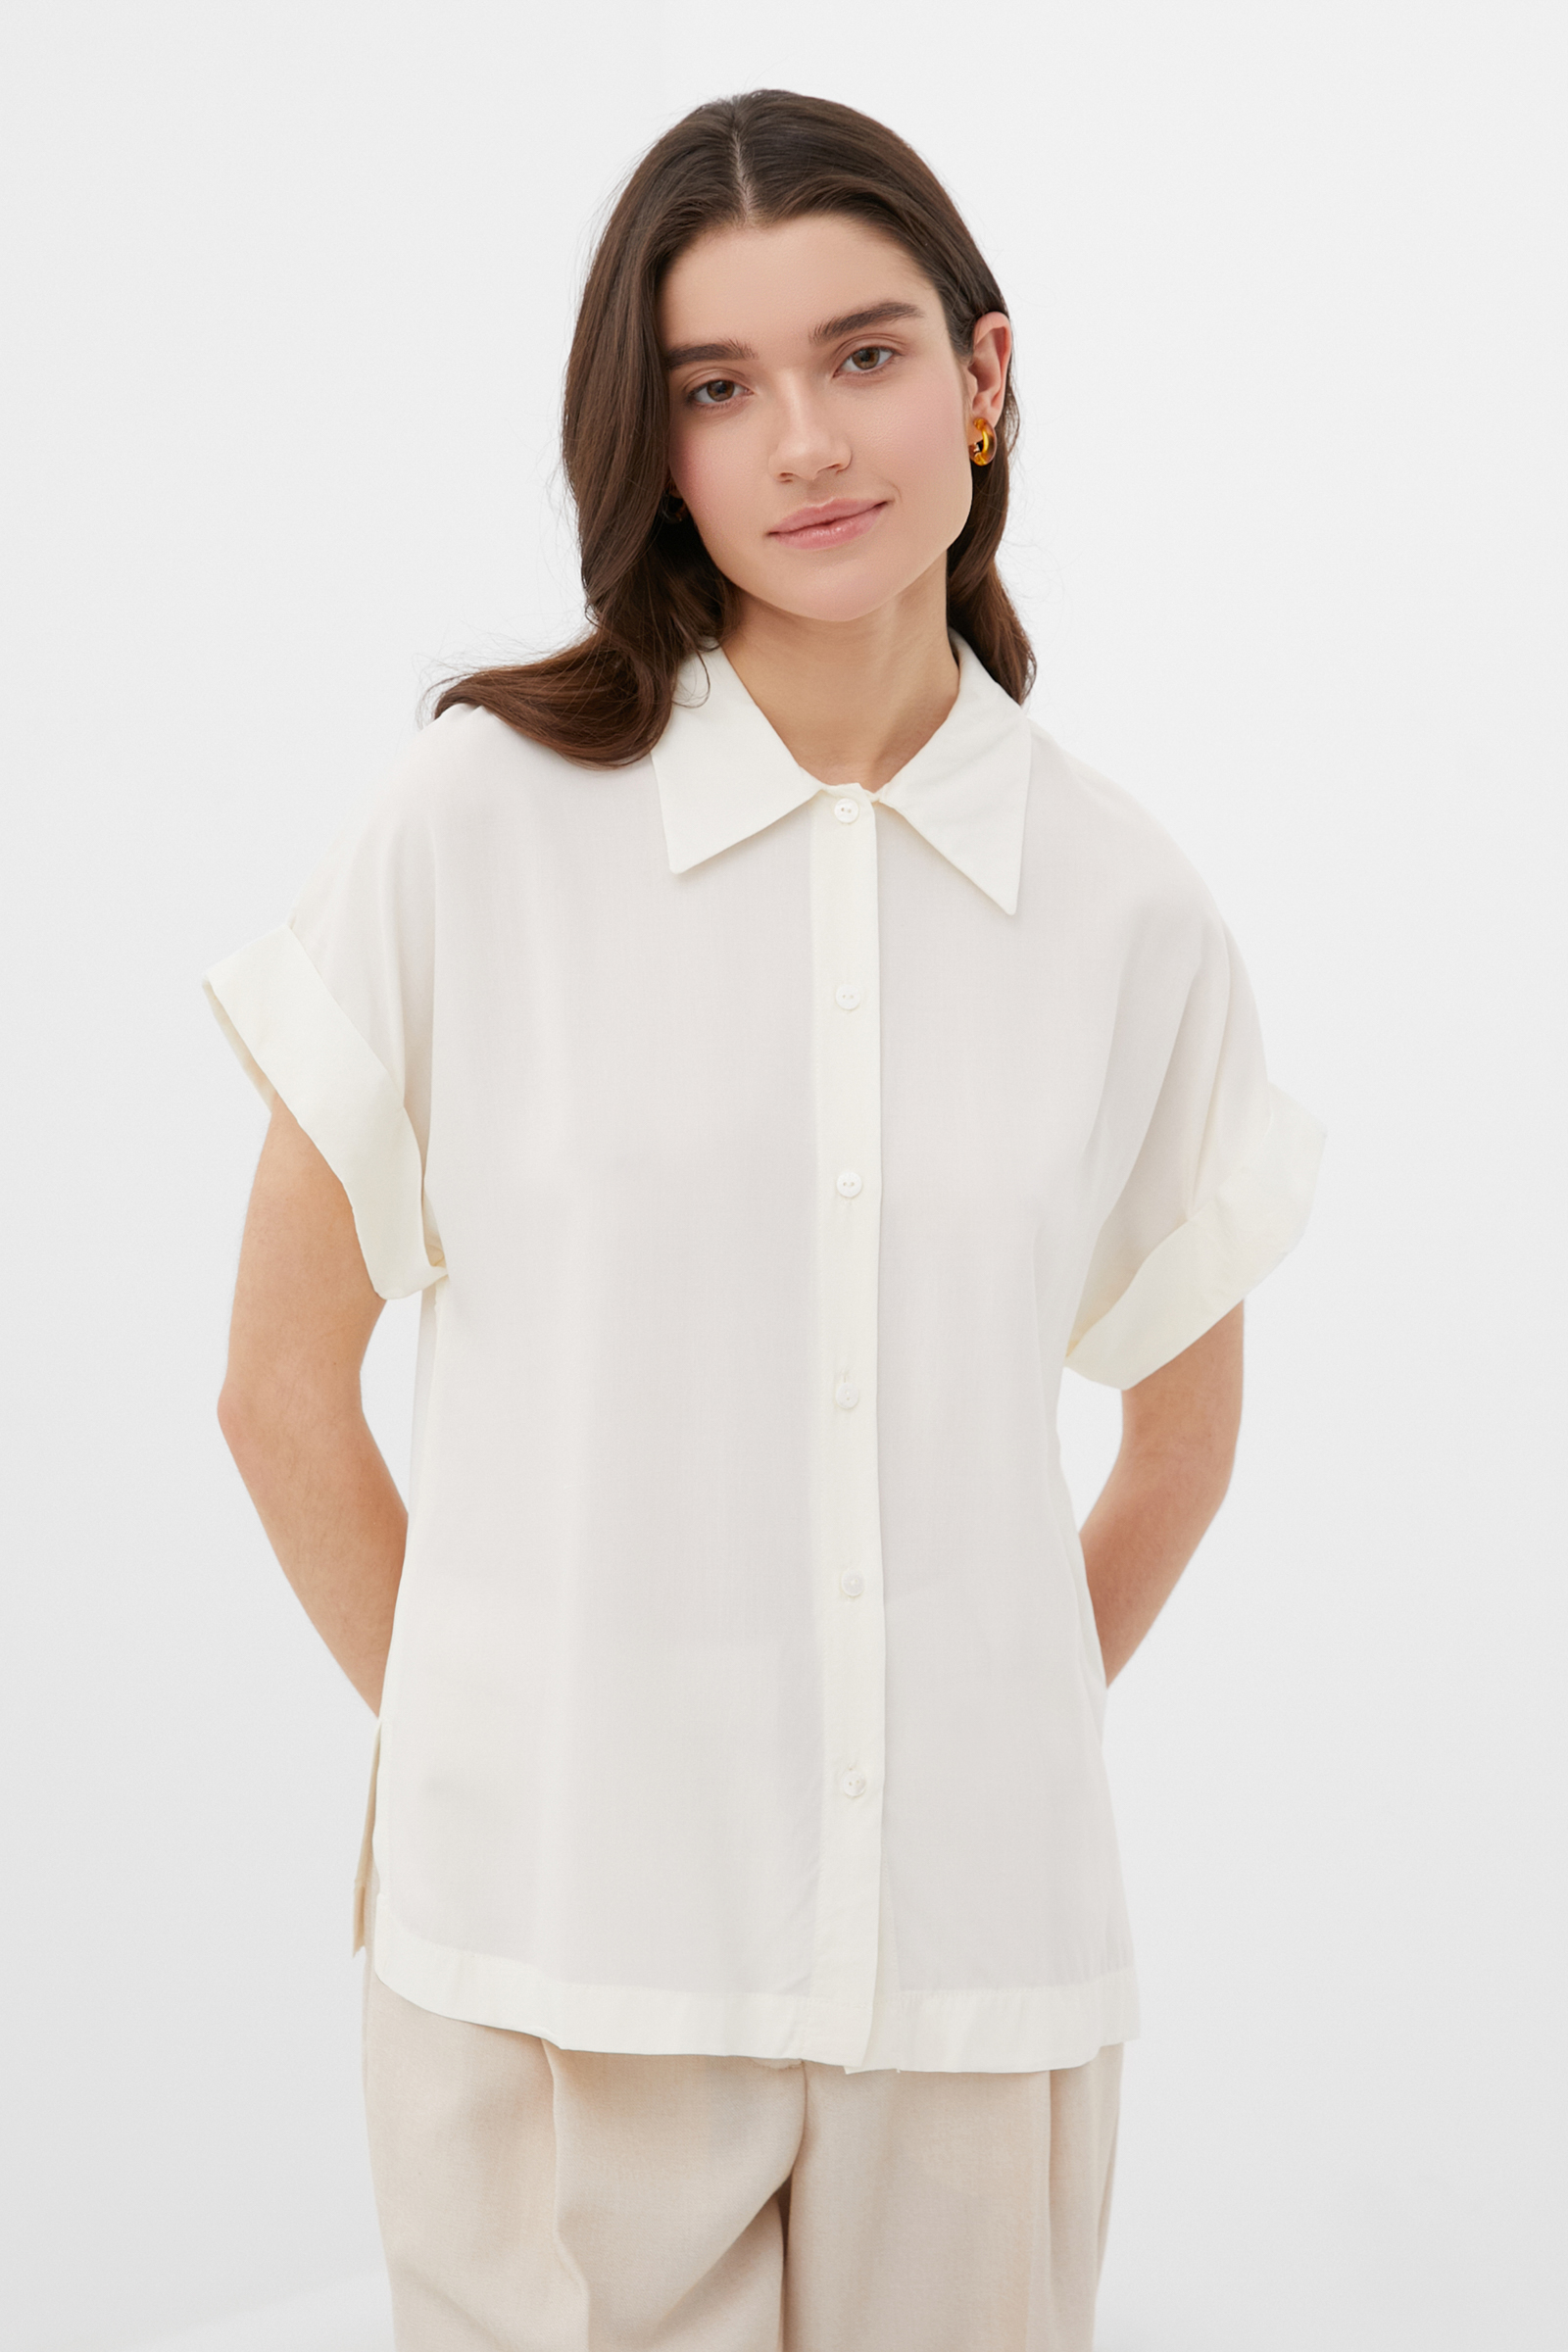 Рубашка женская Finn Flare BAS-10041 белая XL